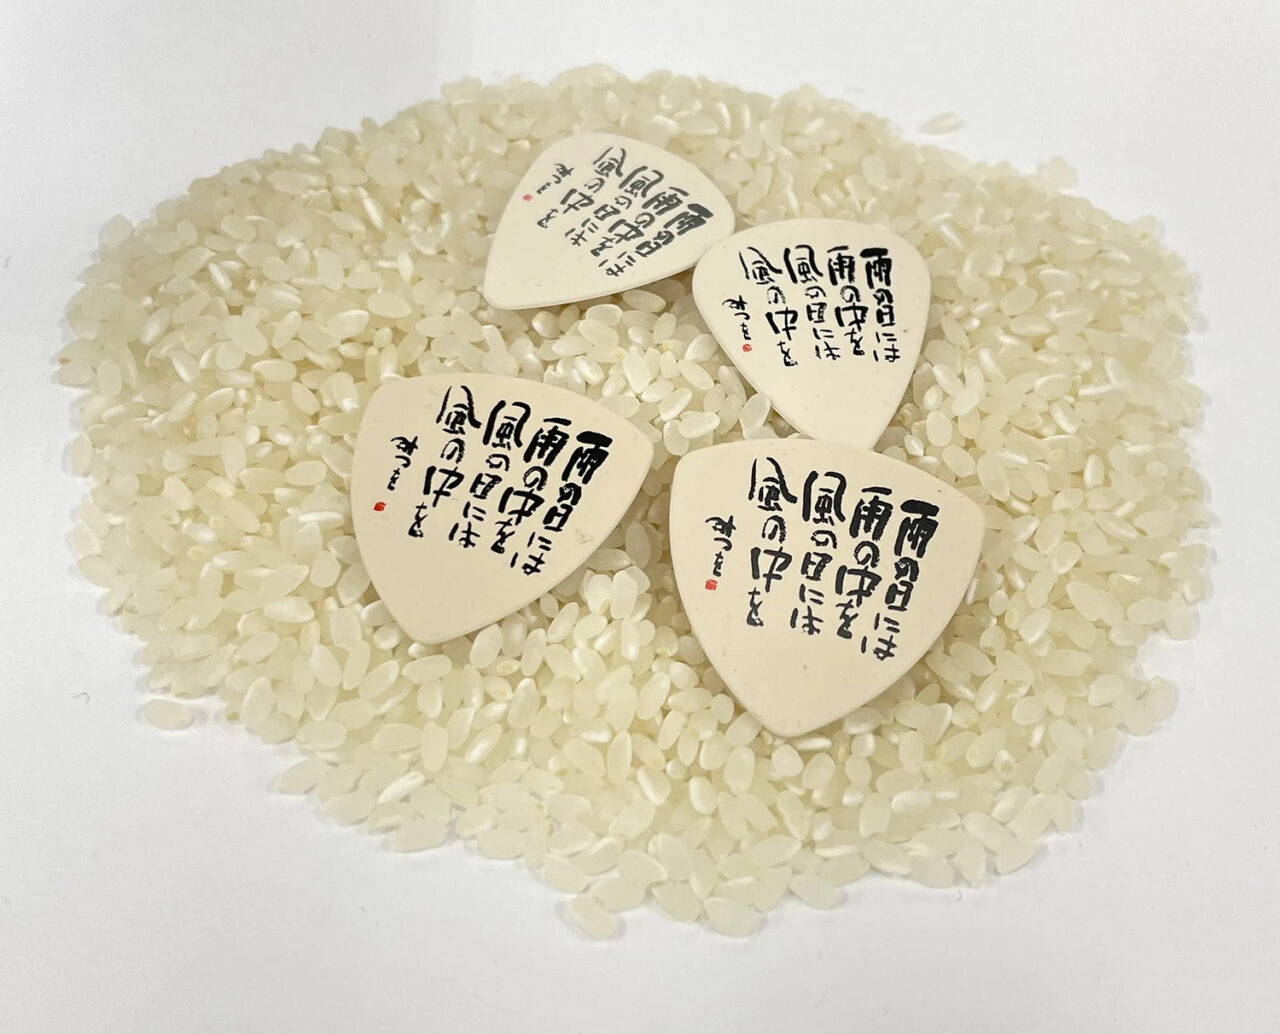 ライスレジン®製「お米のピック」が、島村楽器で数量限定販売されています。 | バイオマスレジンホールディングス